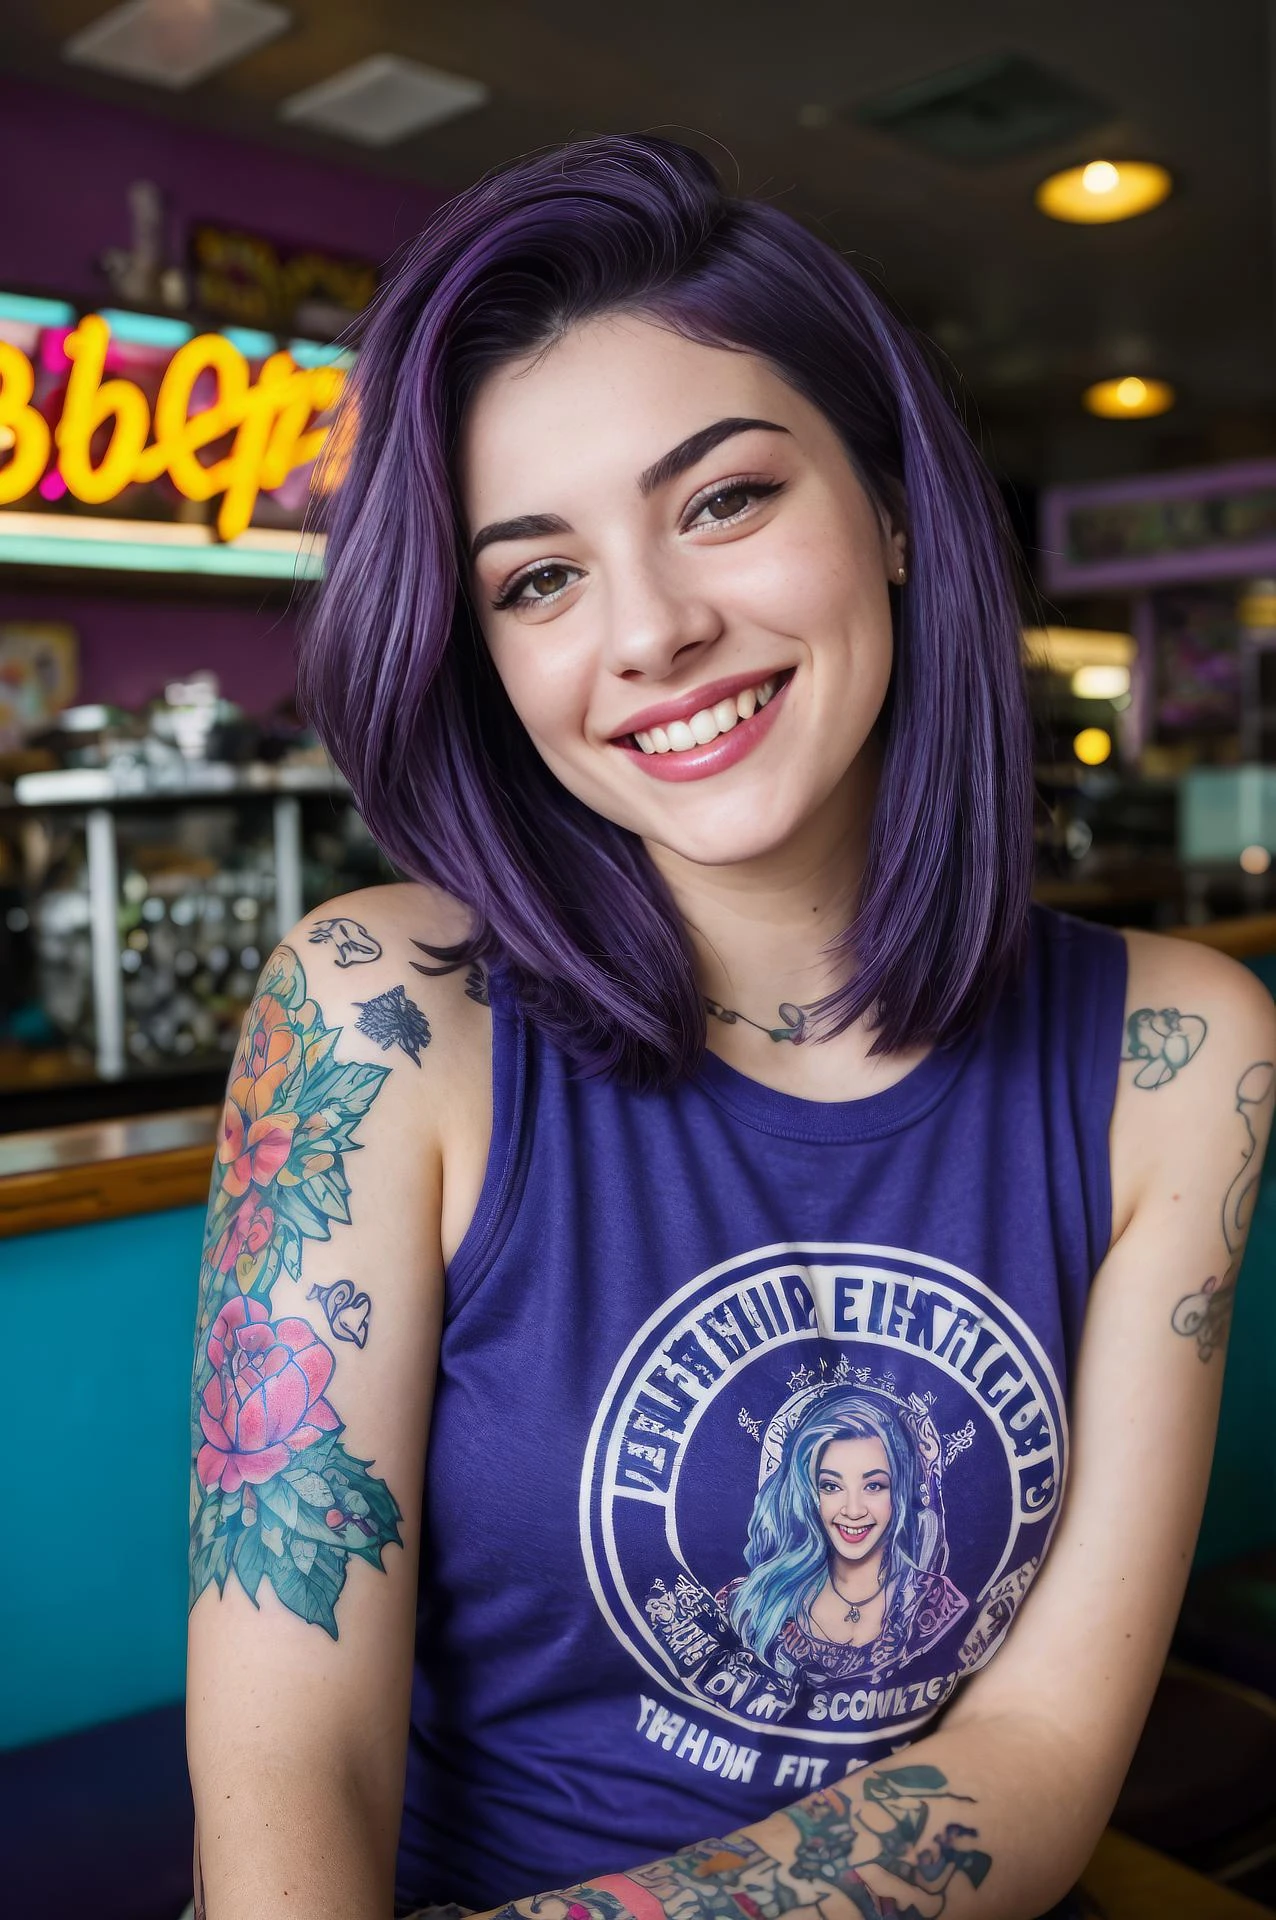 fotografia de rua de uma jovem com cabelo roxo, Sorriso, feliz, camiseta fofa, tatuagens nos braços, sentado em uma lanchonete dos anos 50 